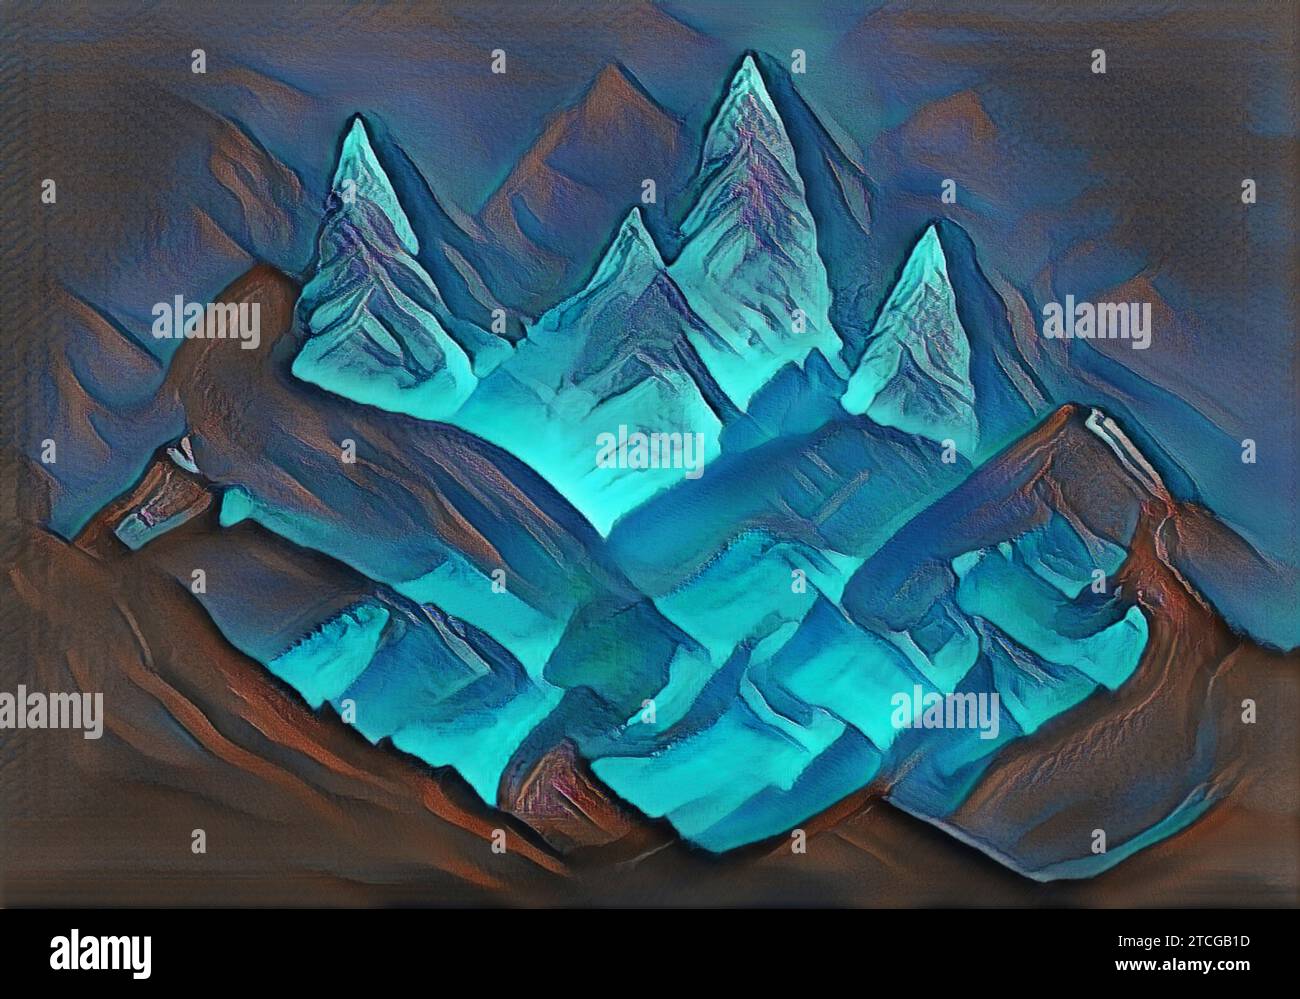 Admirez des arbres de Noël abstraits dans des montagnes bleues enneigées entourées de hauts sommets escarpés. Il s'agit d'une scène hivernale moderne montrant la beauté rêveuse du paysage. Banque D'Images